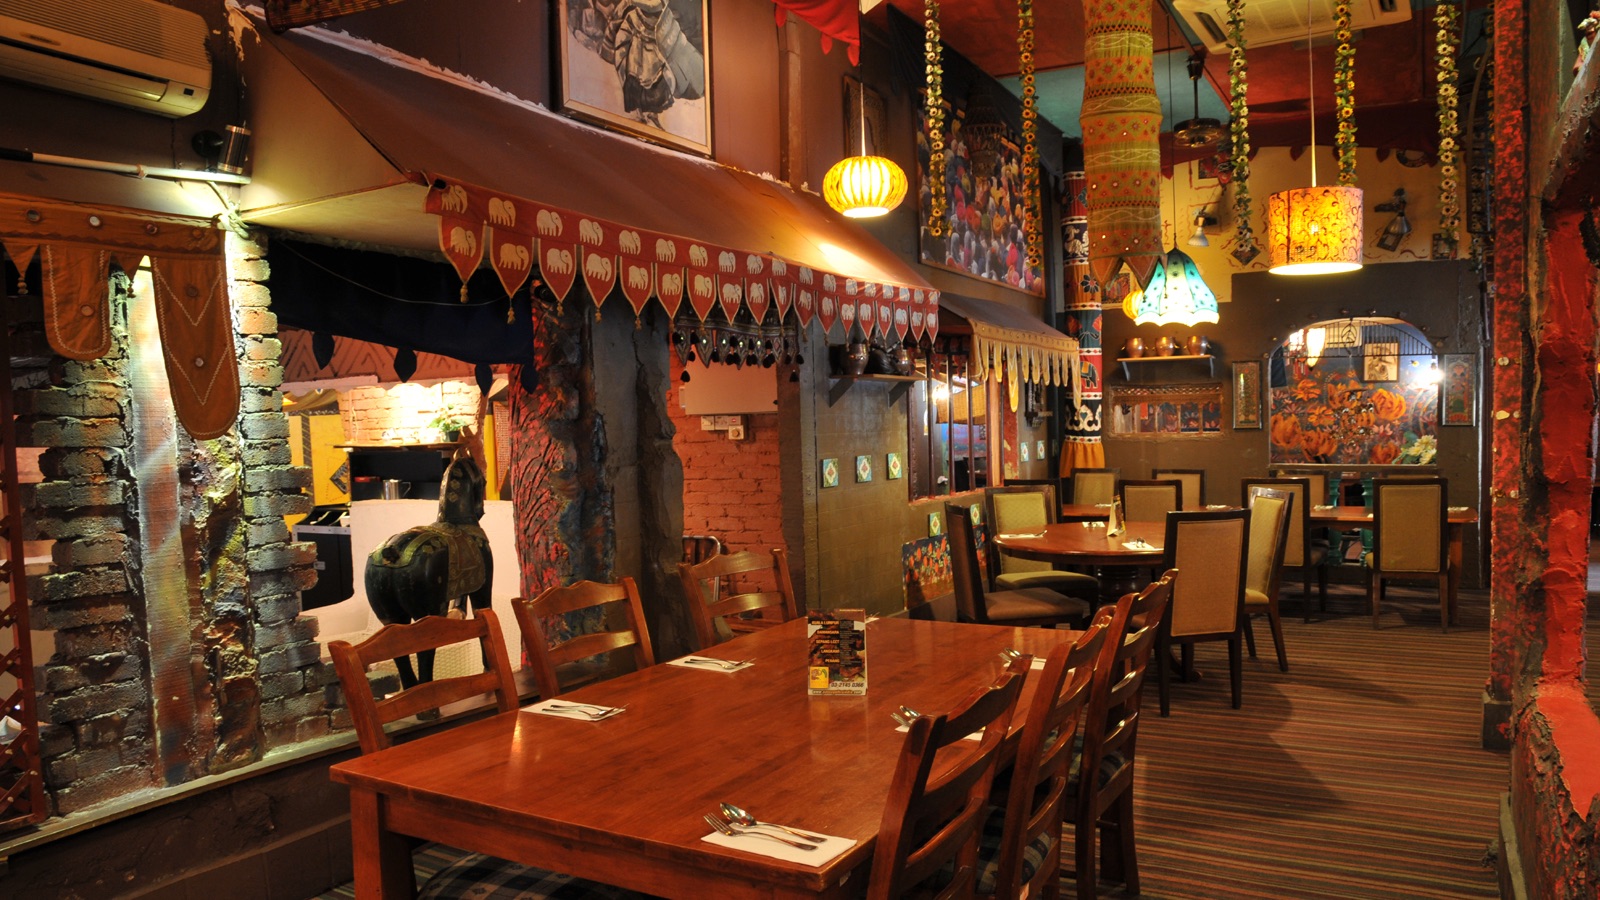 Indian Restaurant - Passage Thru' Indian interior